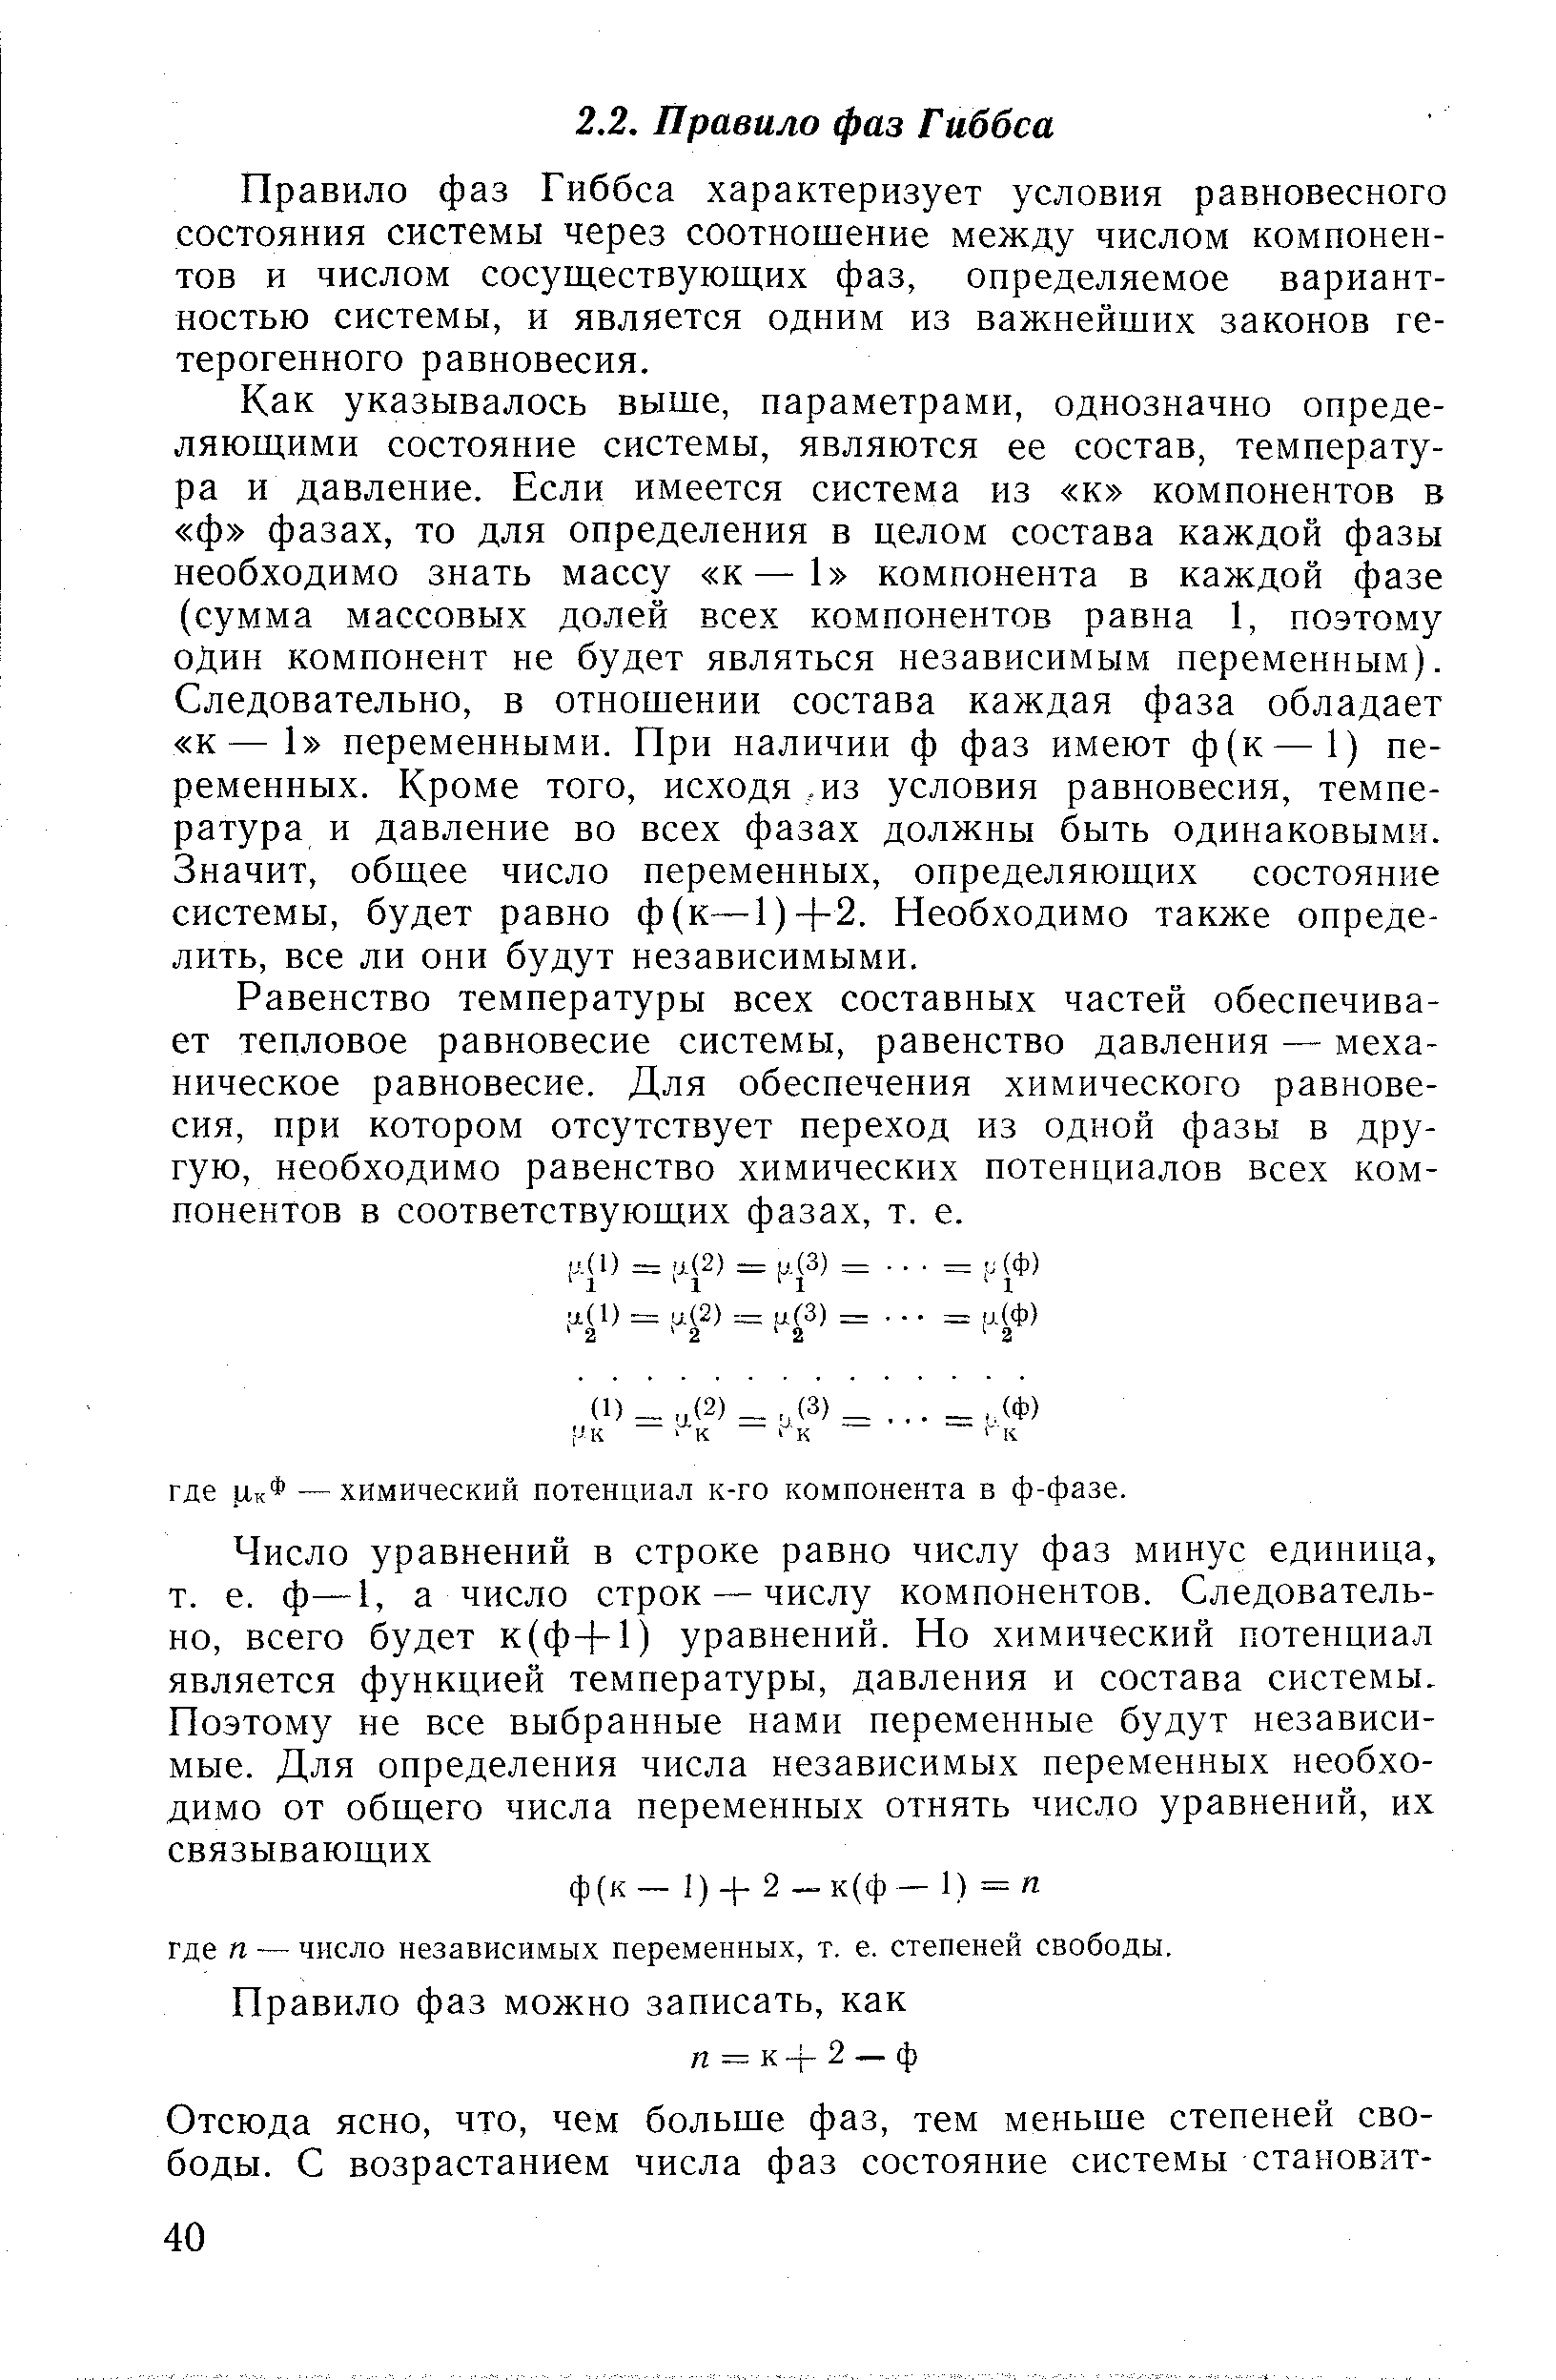 Правило фаз Гиббса характеризует условия равновесного состояния системы через соотношение между числом компонентов и числом сосуществующих фаз, определяемое вариантностью системы, и является одним из важнейших законов гетерогенного равновесия.
